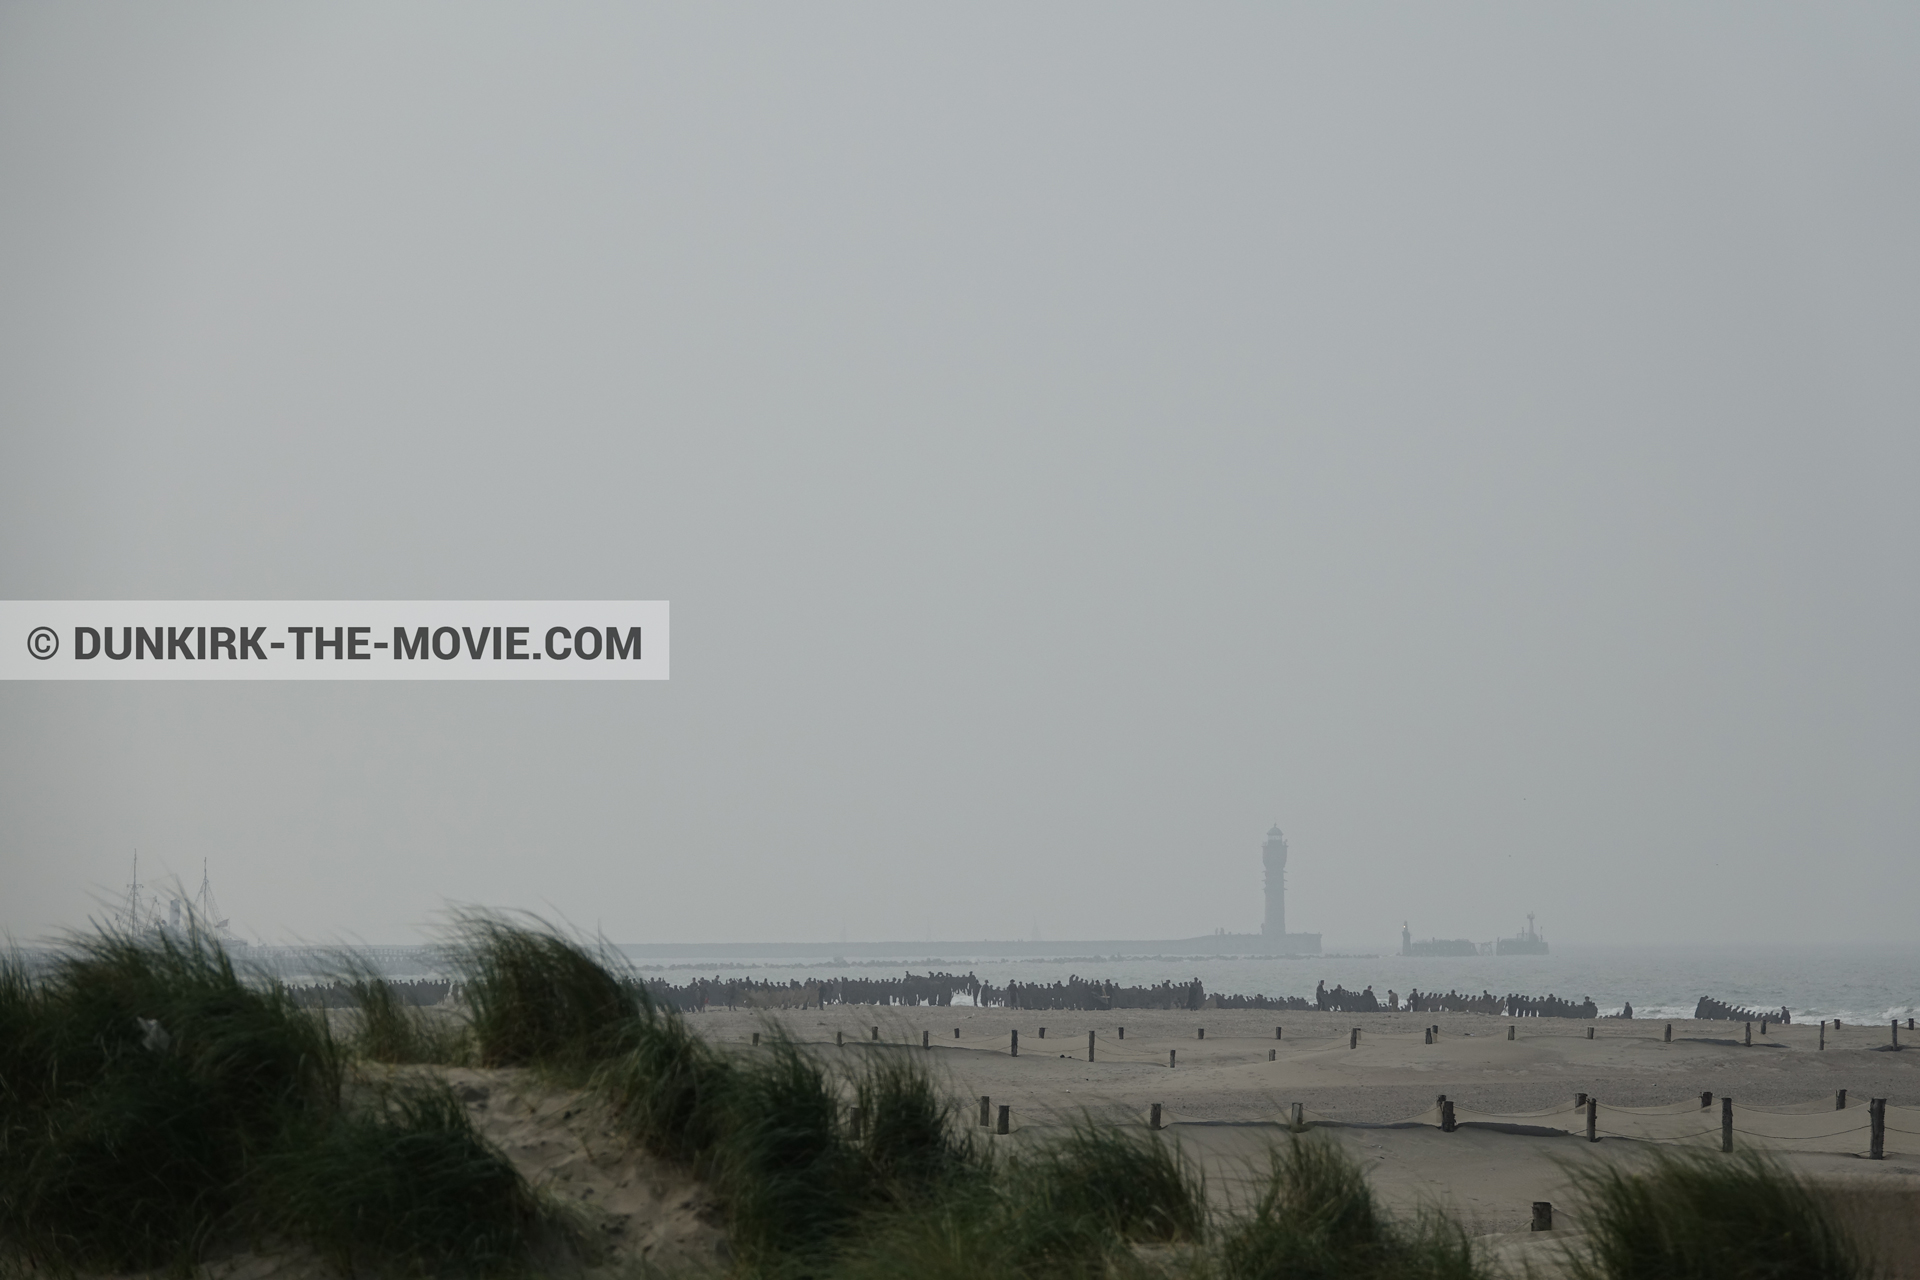 Fotos con cielo gris, faro de Saint-Pol-sur-Mer, playa,  durante el rodaje de la película Dunkerque de Nolan